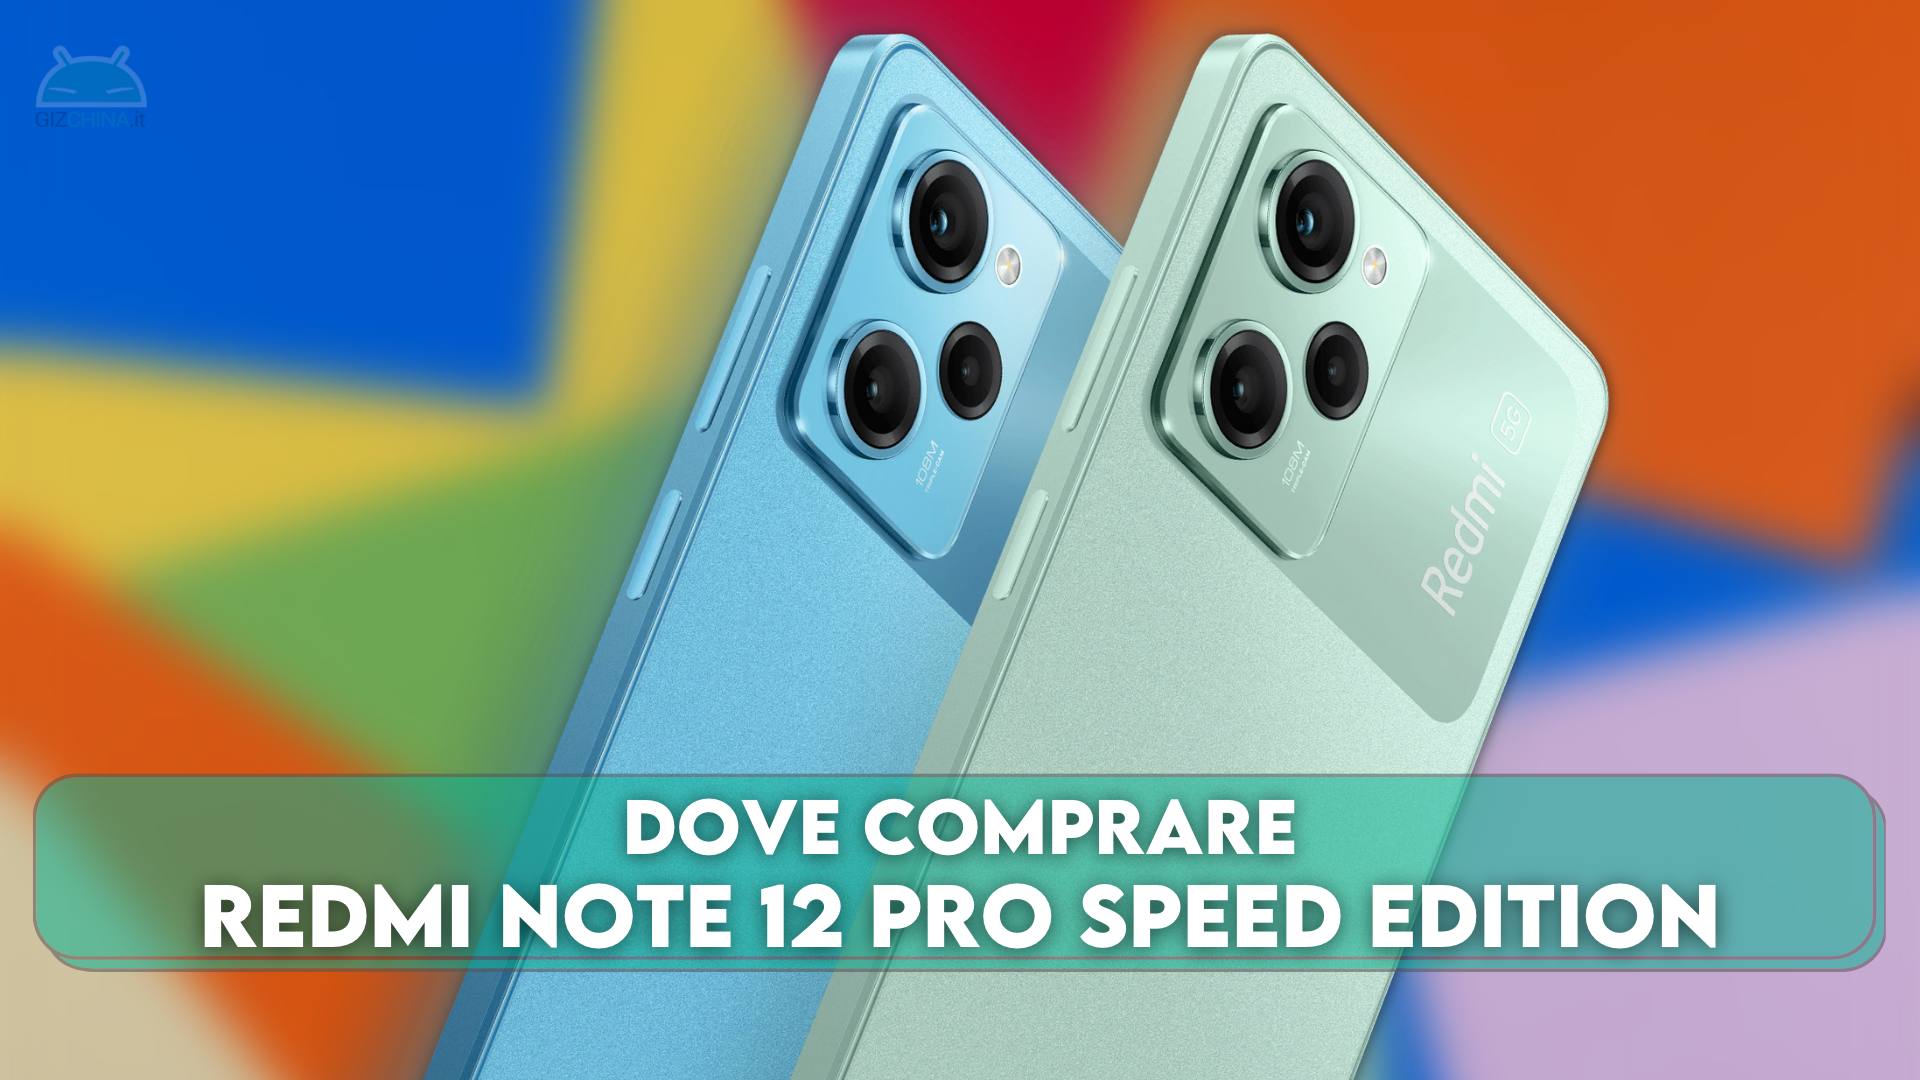 Redmi Note 12 Pro Speed Edition. Redmi Note 12 Pro Speed Edition (Redwood);. Note 12 speed edition